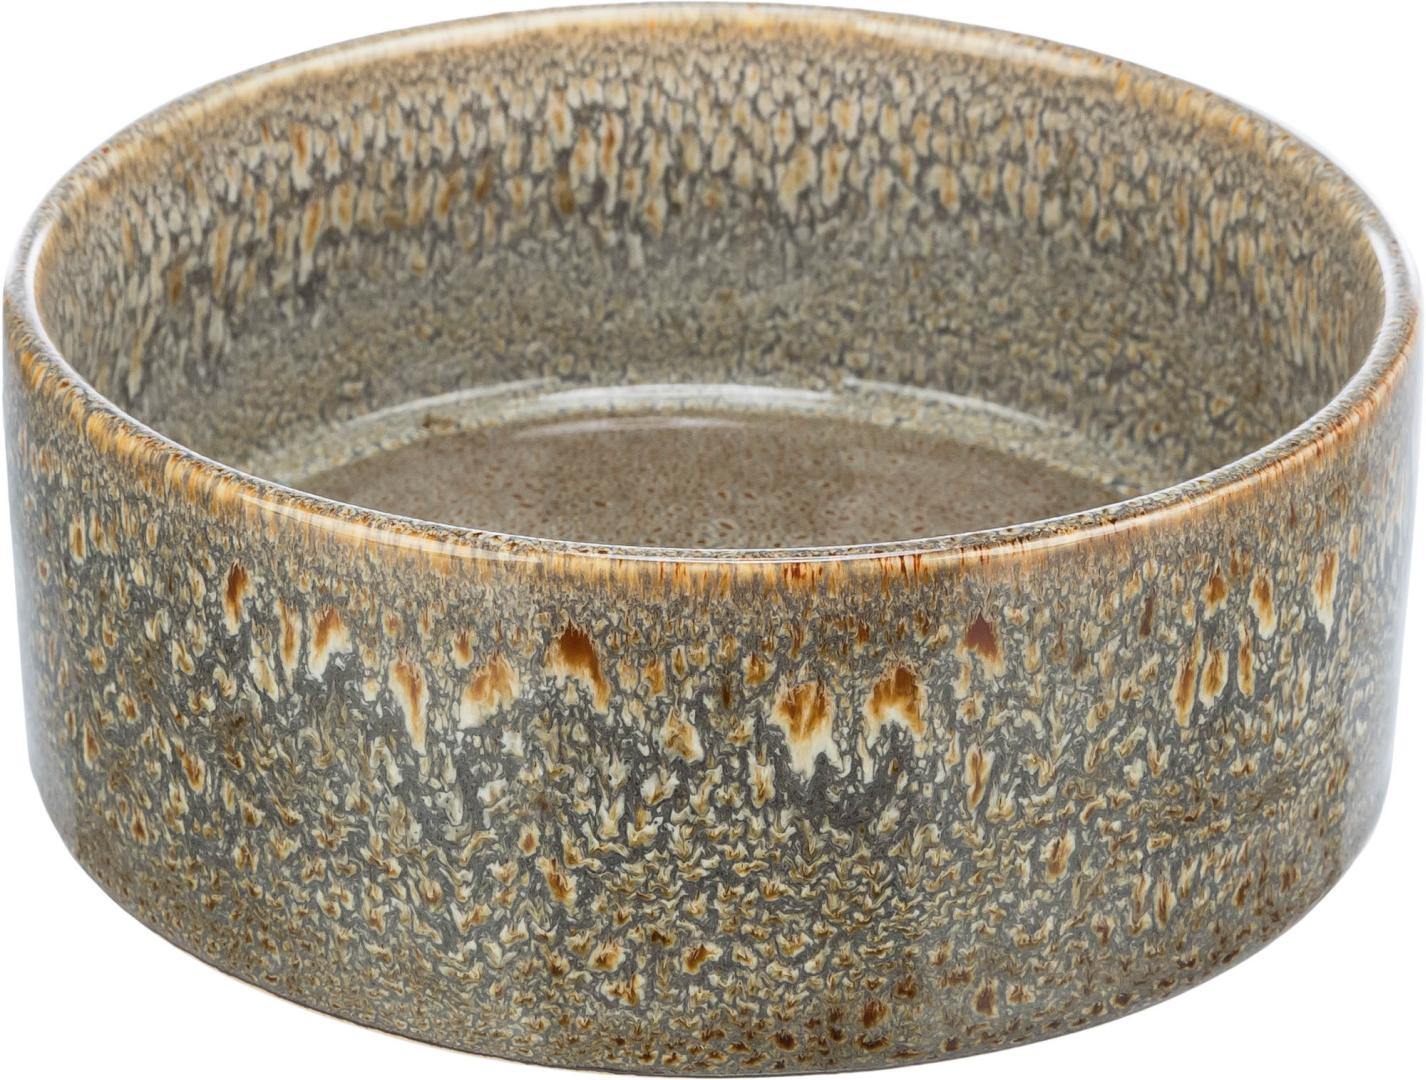 TRIXIE Napf, Keramik, 0,9 l / Ø 16 cm, braun